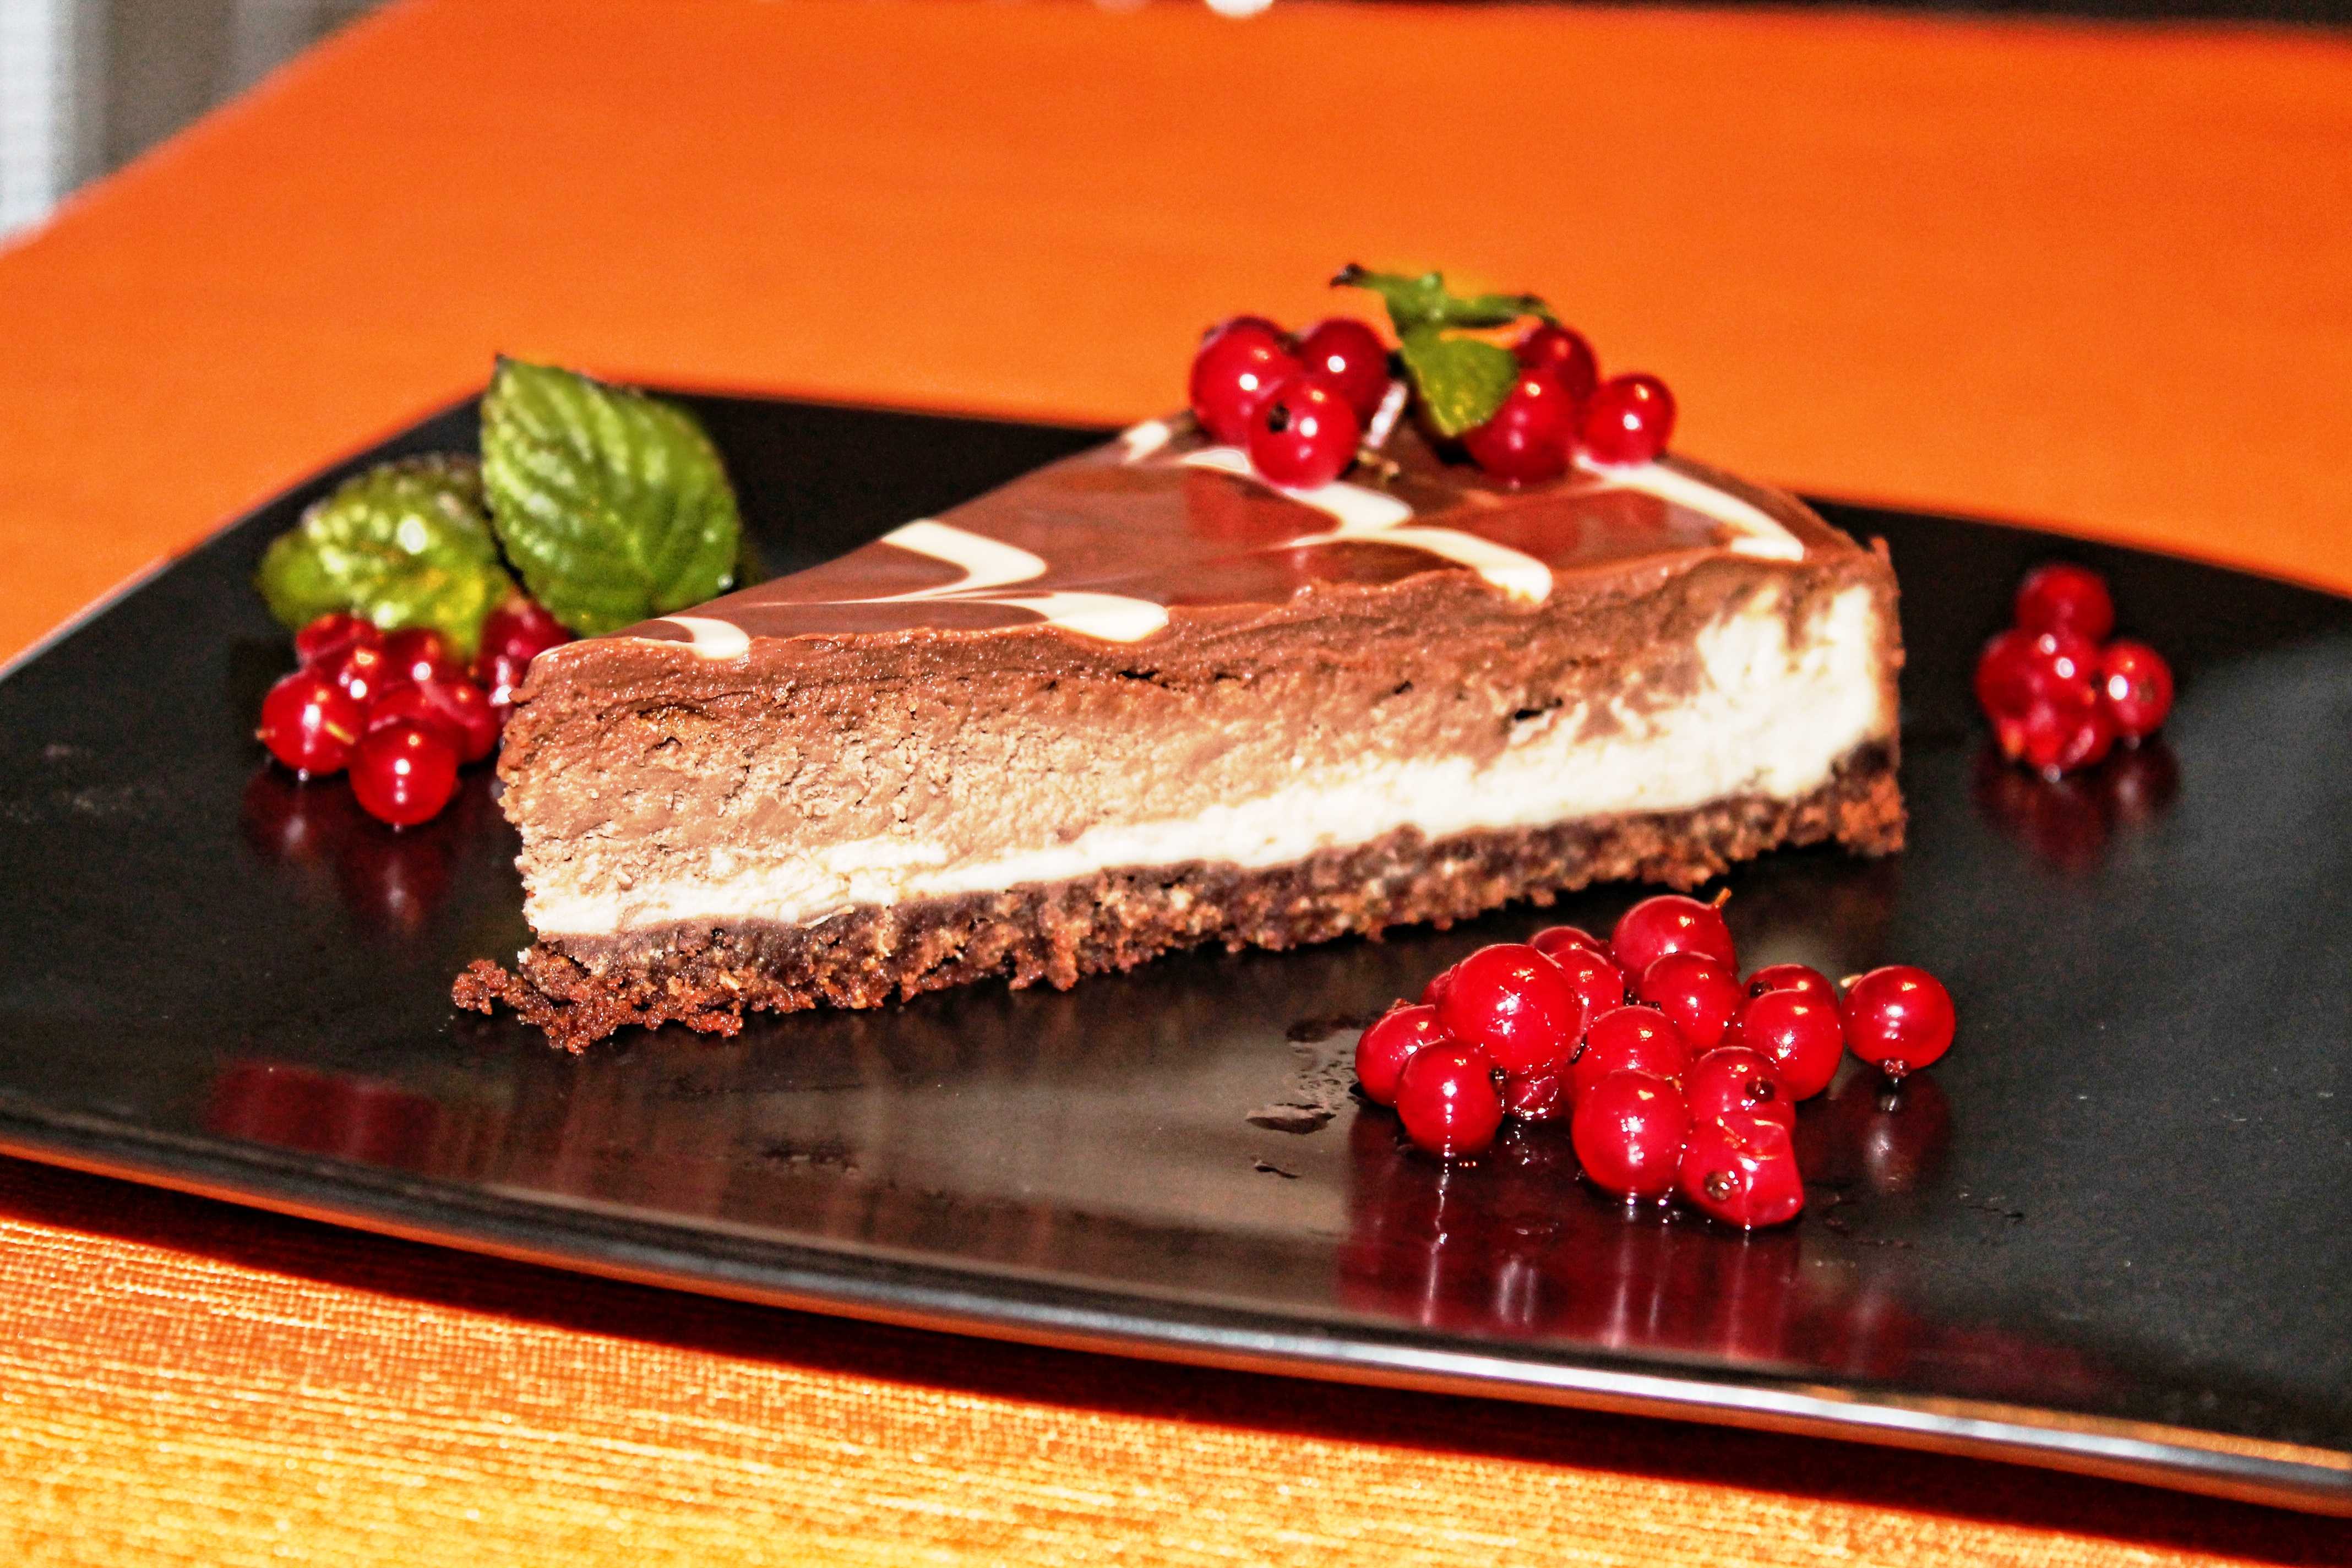 Самые вкусные шоколадные торты: 10 лучших рецептов, которые достаточно просто приготовить у себя дома